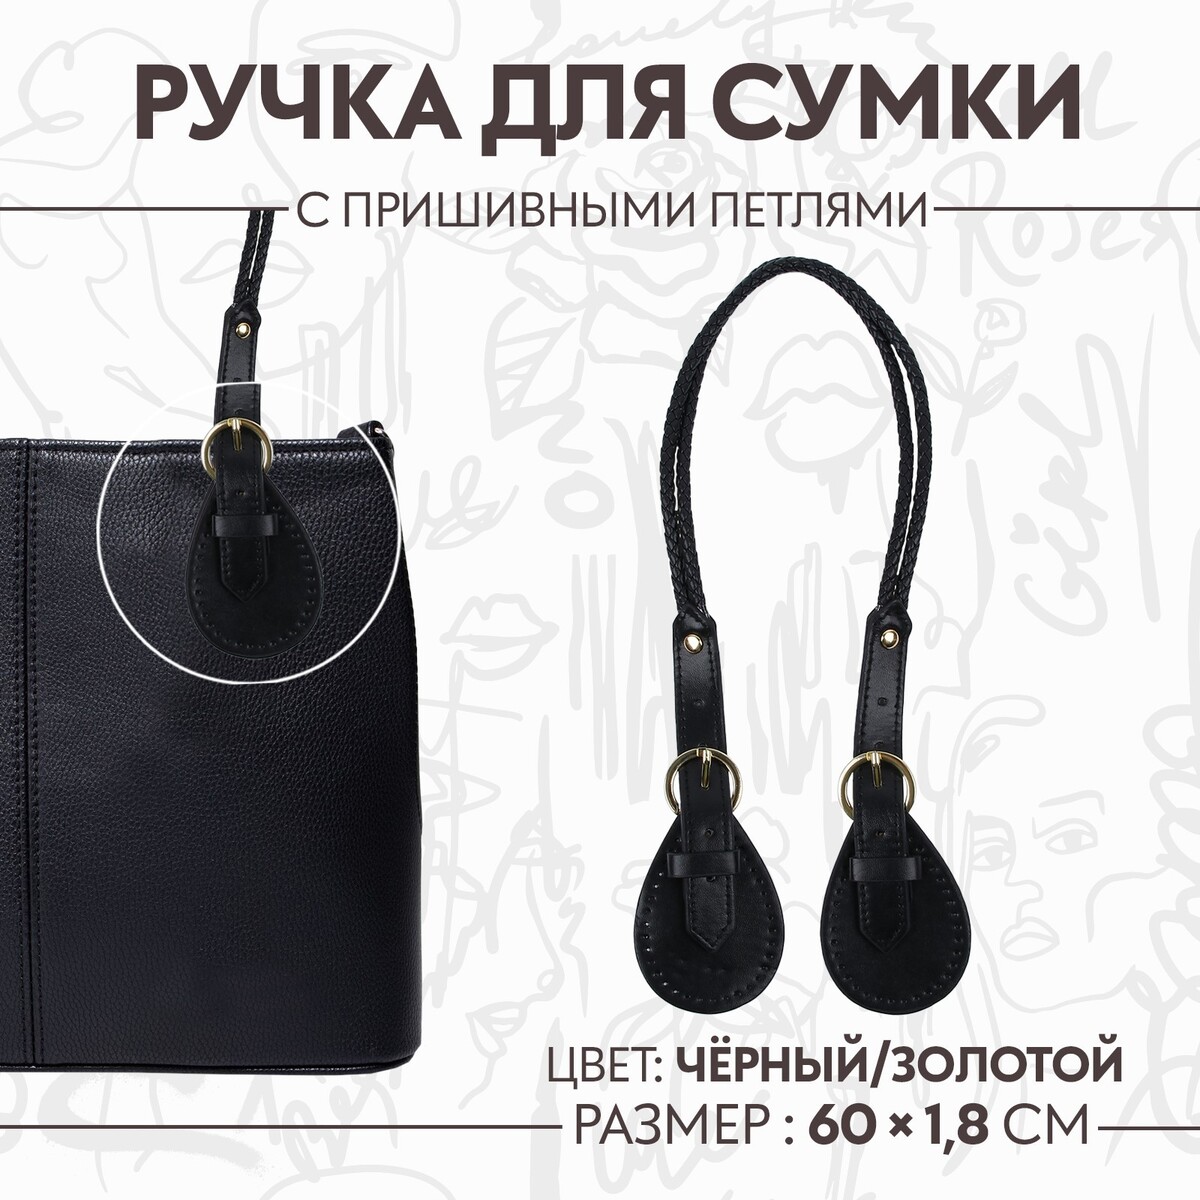 Ручка для сумки, шнуры, 60 × 1,8 см, с пришивными петлями 5,8 см, цвет черный/золотой ручка для сумки бусы d 14 мм 60 см золотой